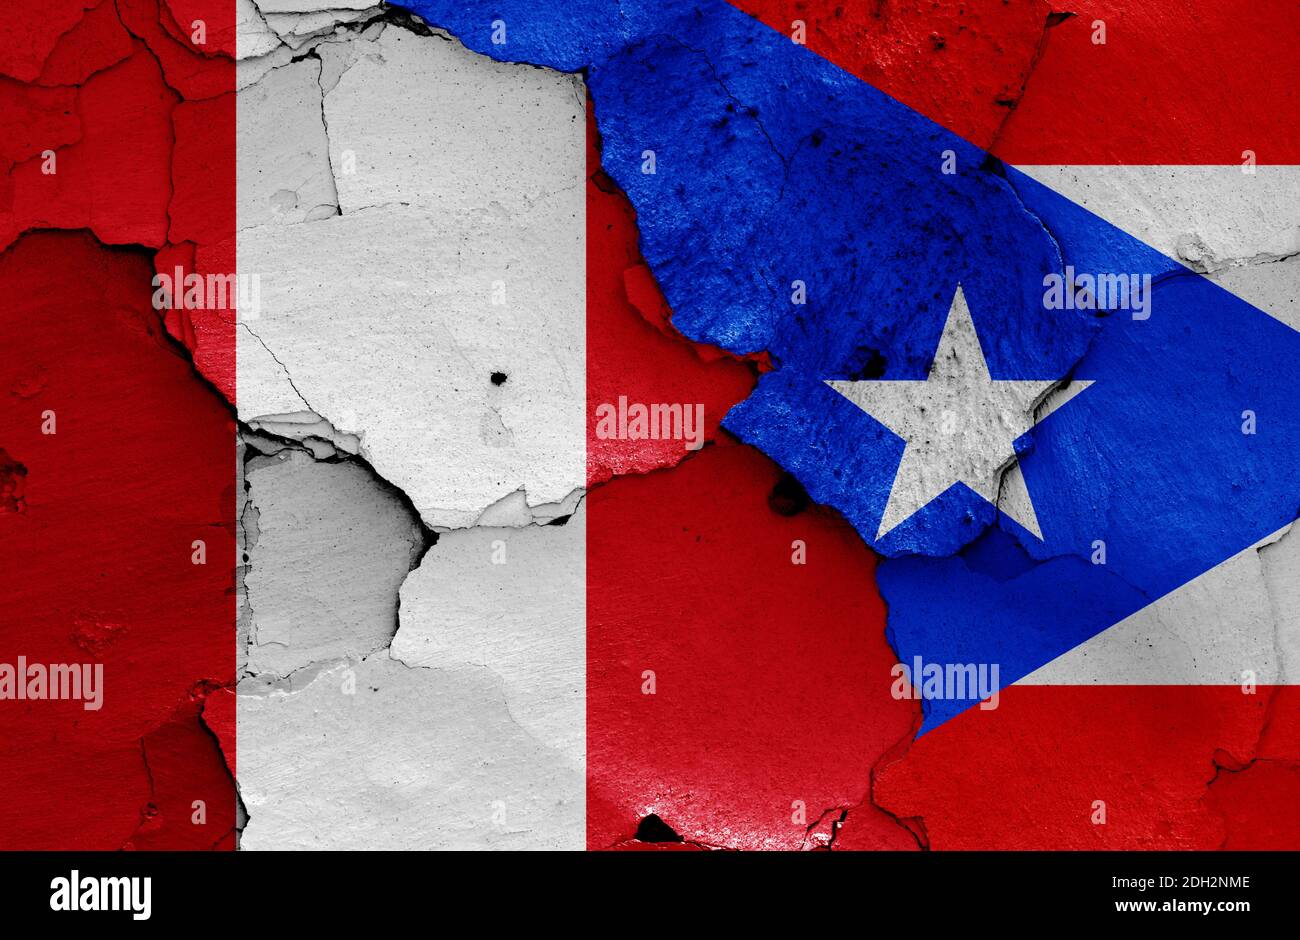 Flaggen von Peru und Puerto Rico auf rissige Wand gemalt Stockfoto